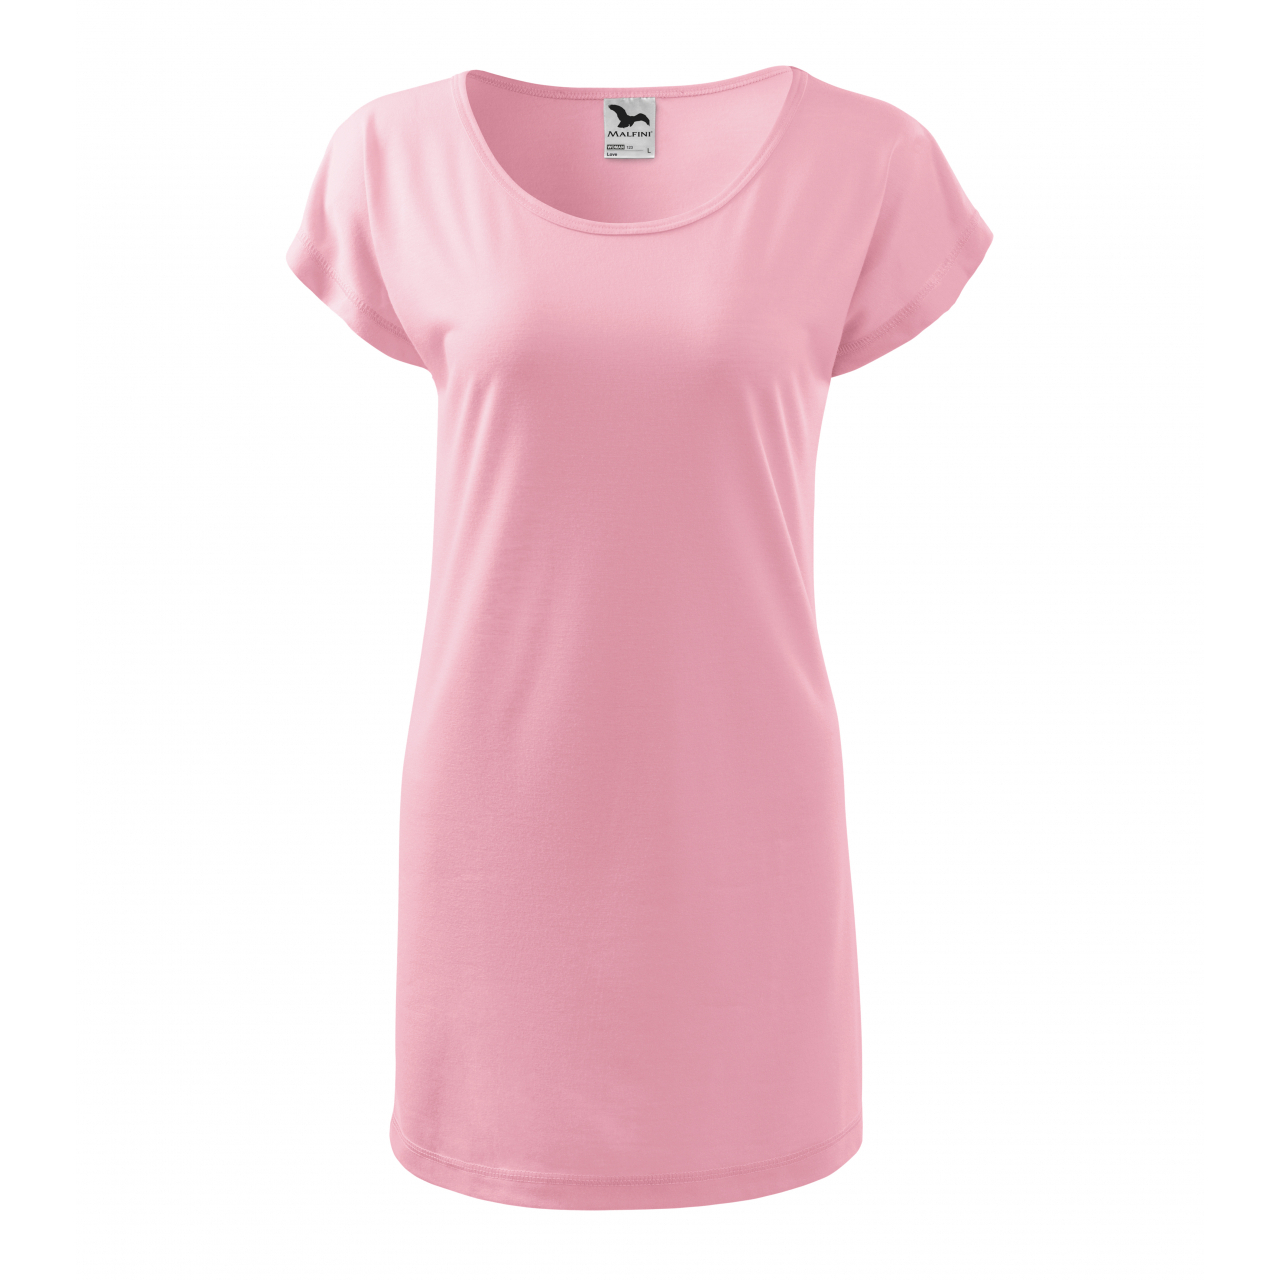 Šaty Malfini Love - světle růžové, XS